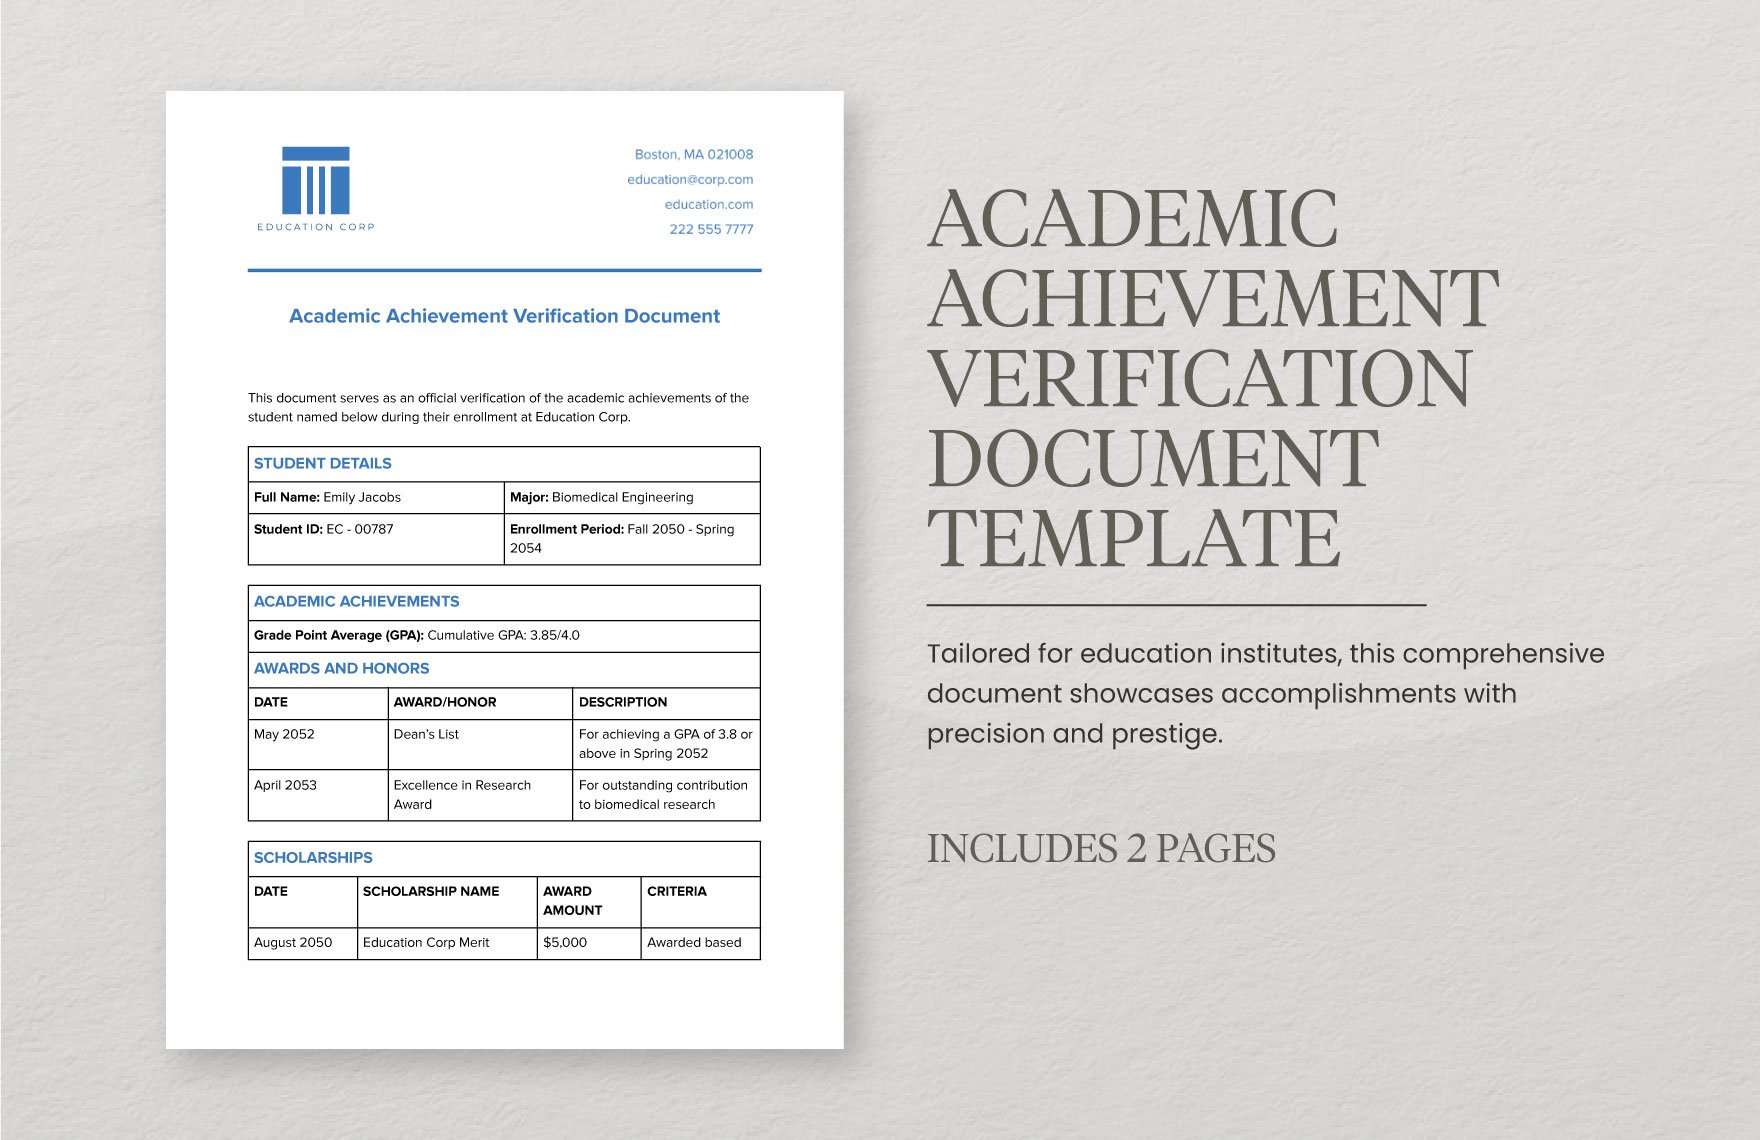 Academic Achievement Verification Document Template